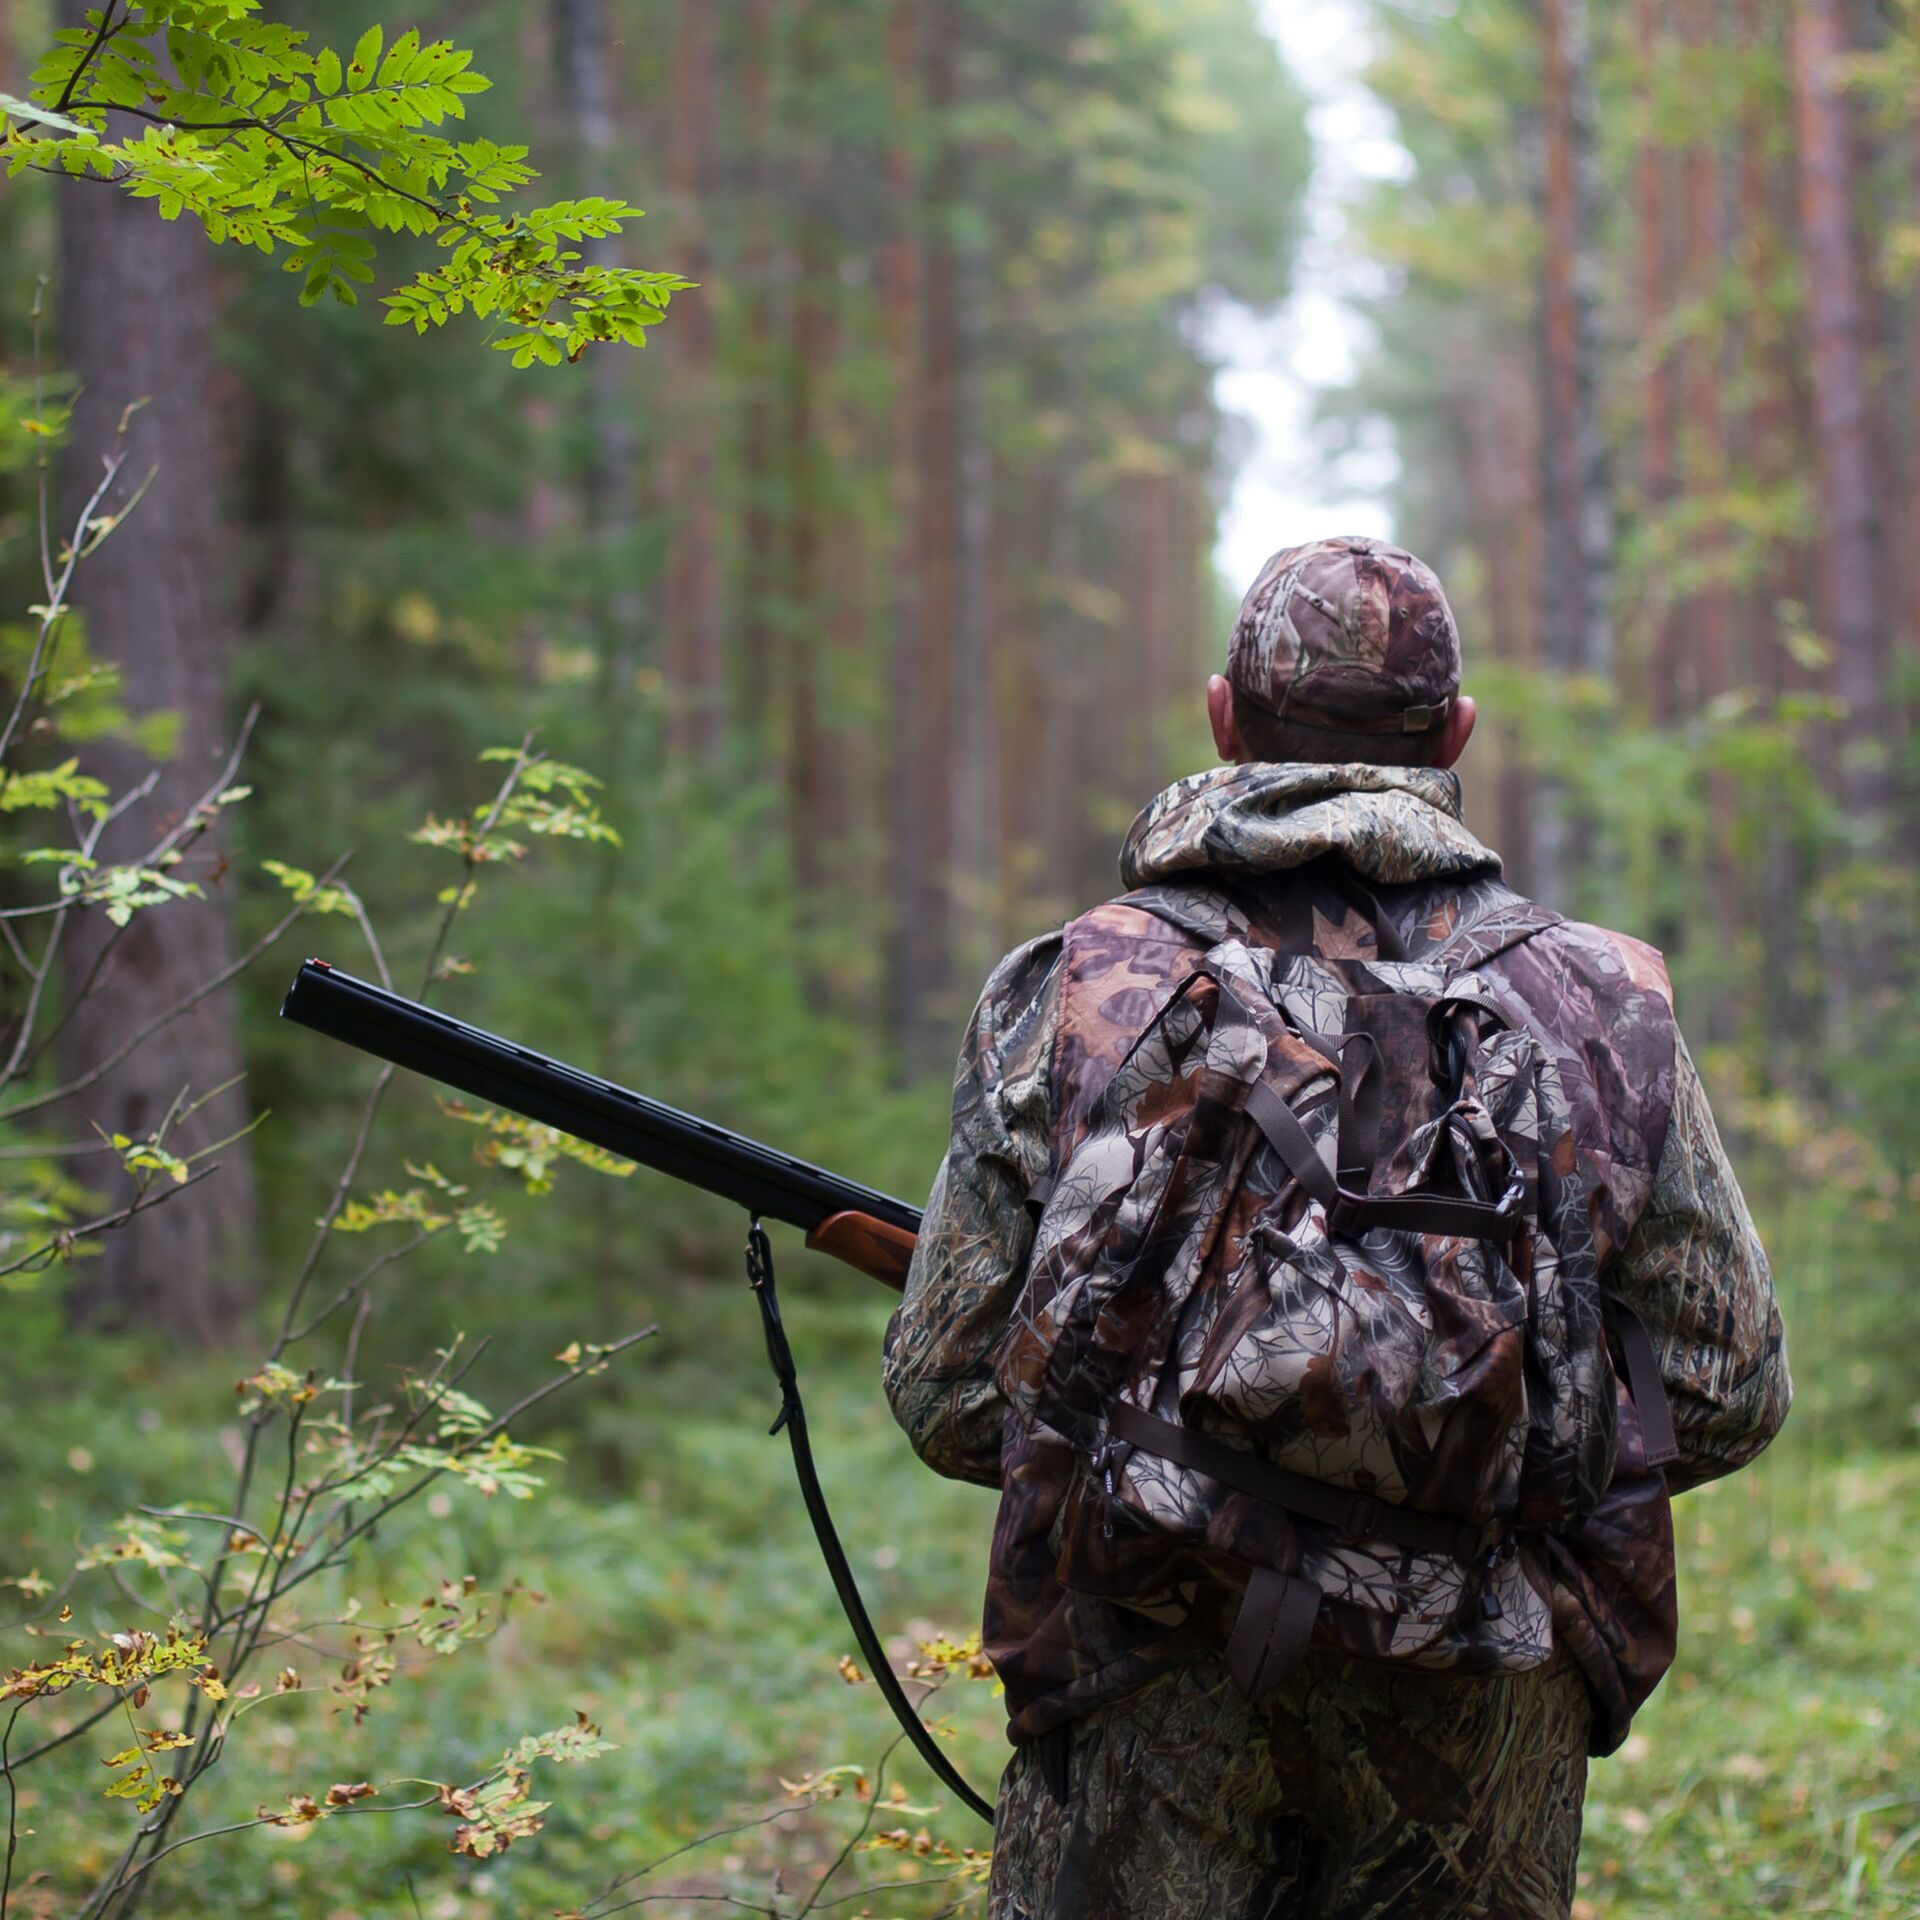 Оружейный Клуб охотников: центр для обмена опытом и практики охотничьего мастерства